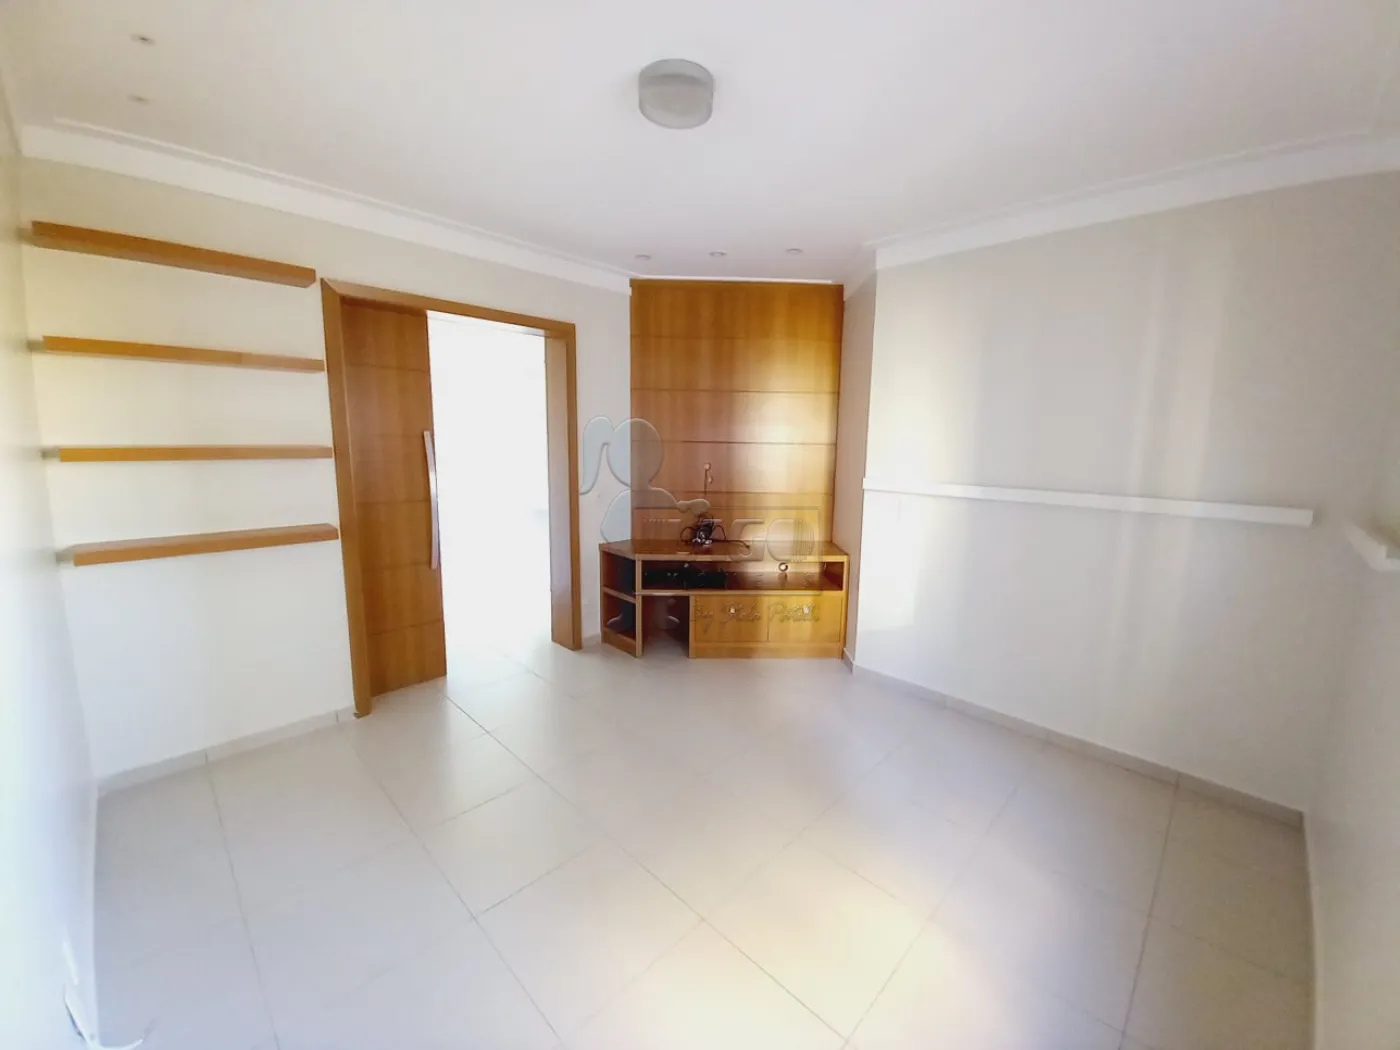 Alugar Apartamento / Padrão em Ribeirão Preto R$ 4.000,00 - Foto 21